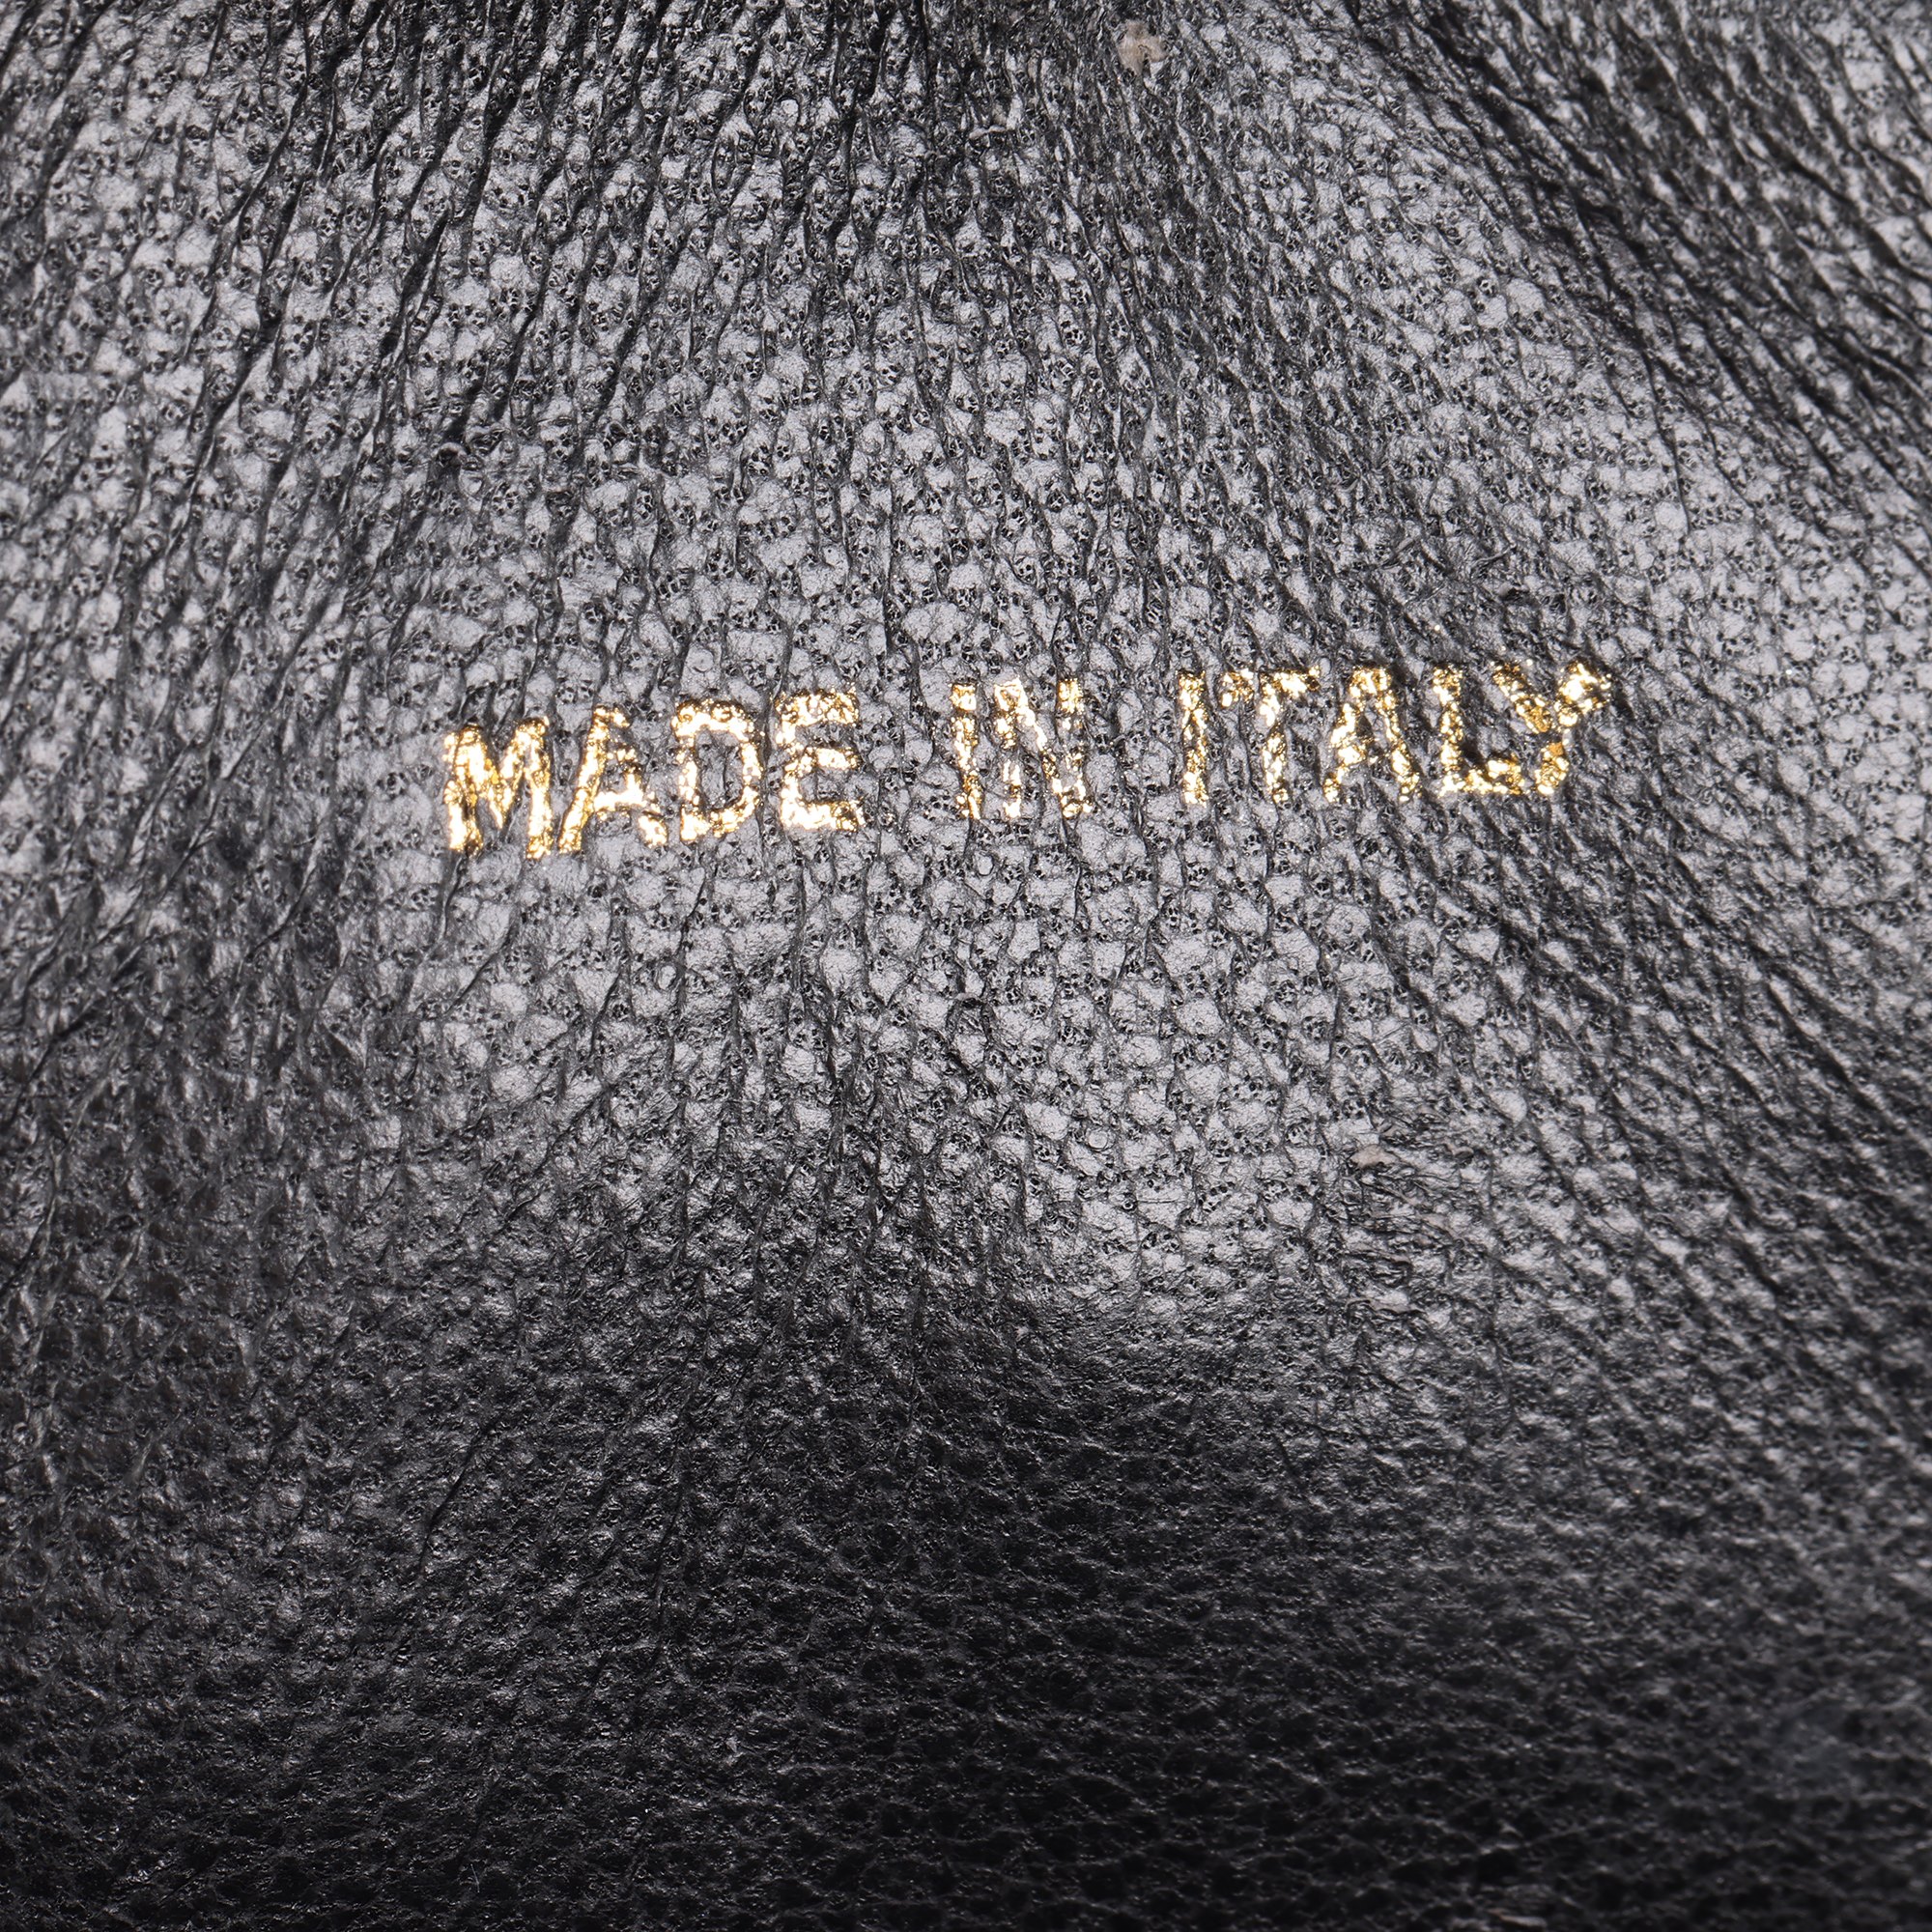 Chanel Black Lambskin Leather Vintage Round Fringe Timeless Shoulder Bag